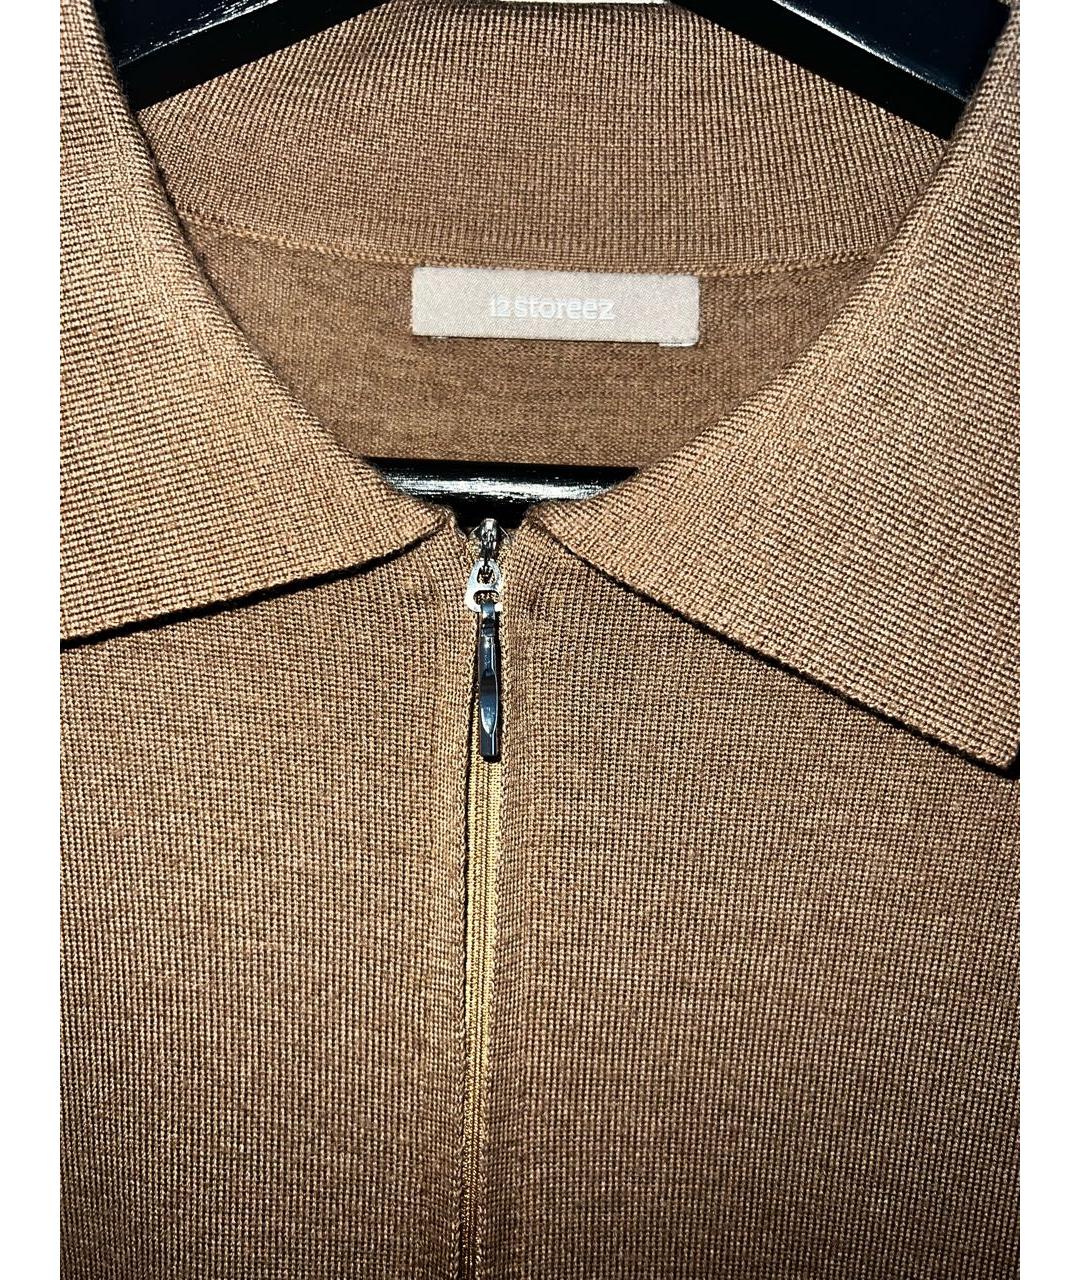 12 STOREEZ Коричневый шерстяной джемпер / свитер, фото 3